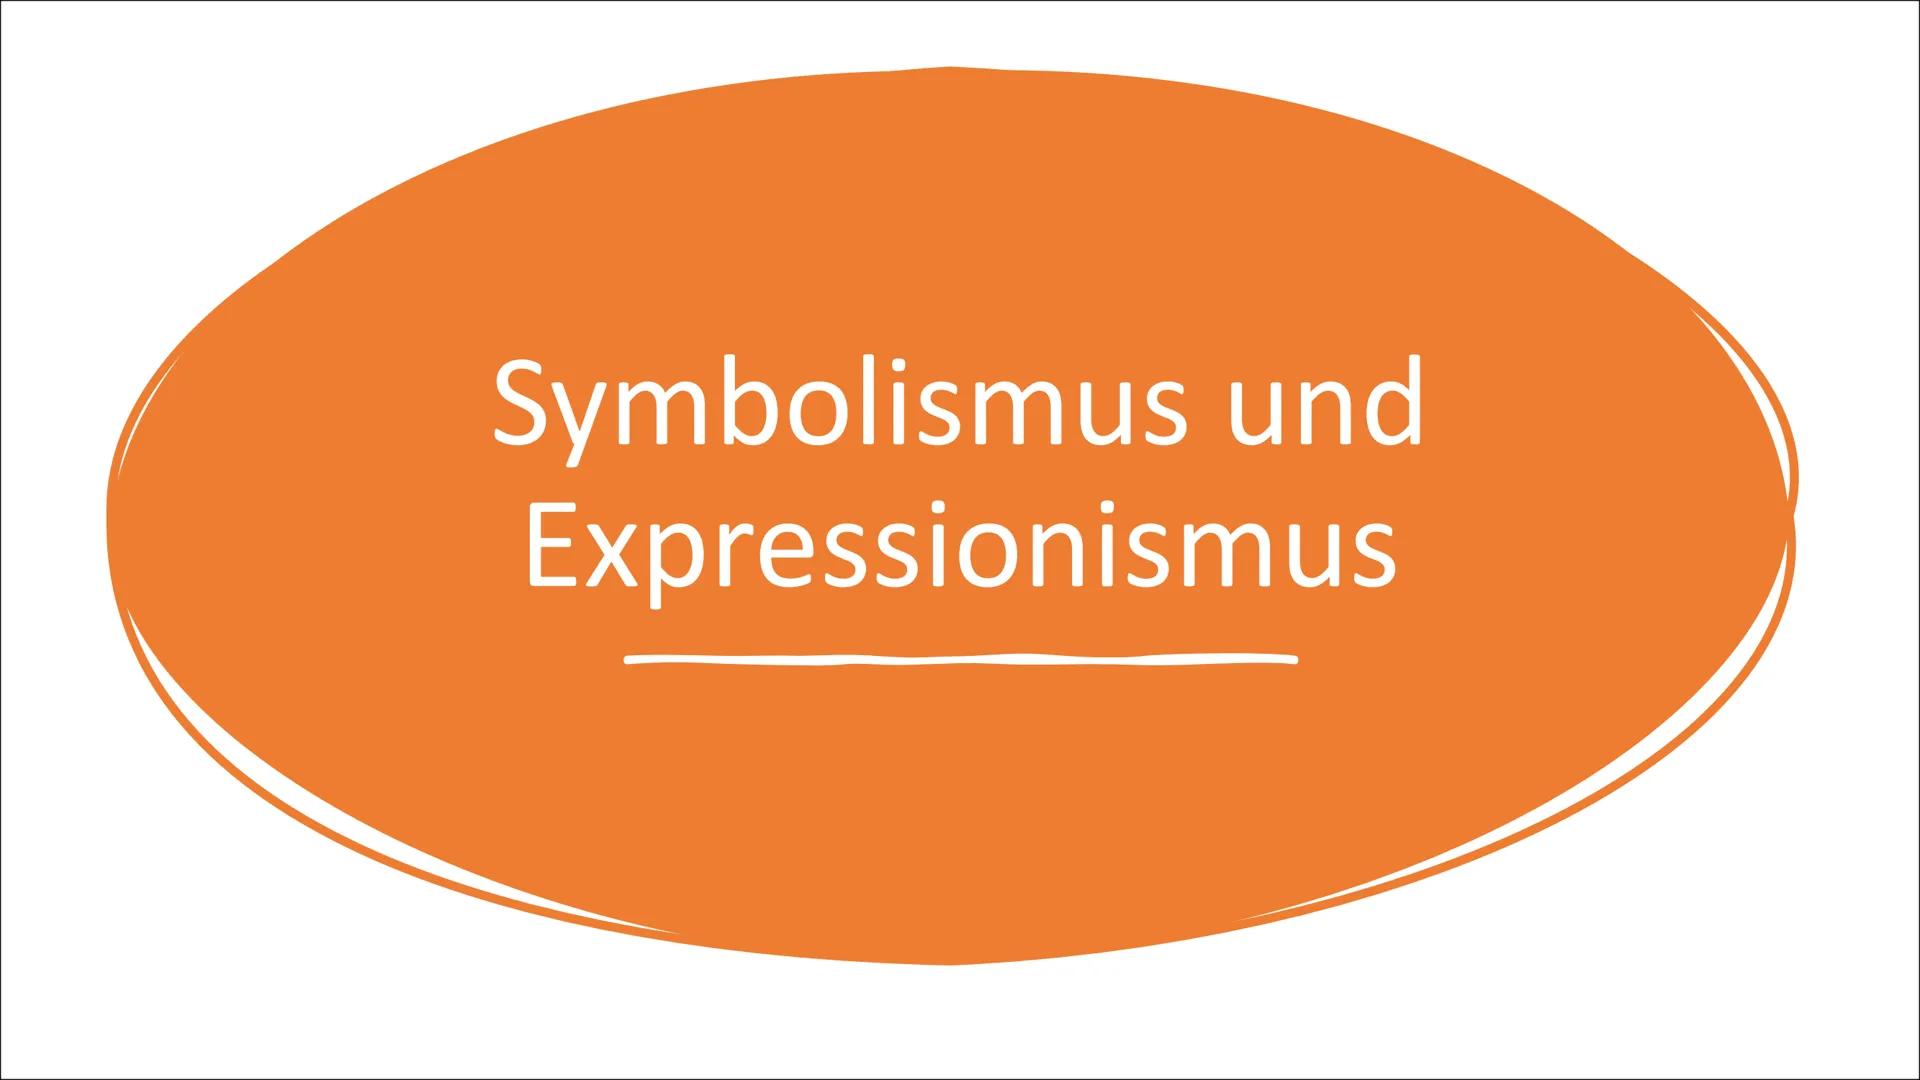 Symbolismus und
Expressionismus مستسلمهمه
Definition:
Kunstrichtung die Inhalt in Symbolen wiederzugeben versucht.
Abkehr von Realismus und 